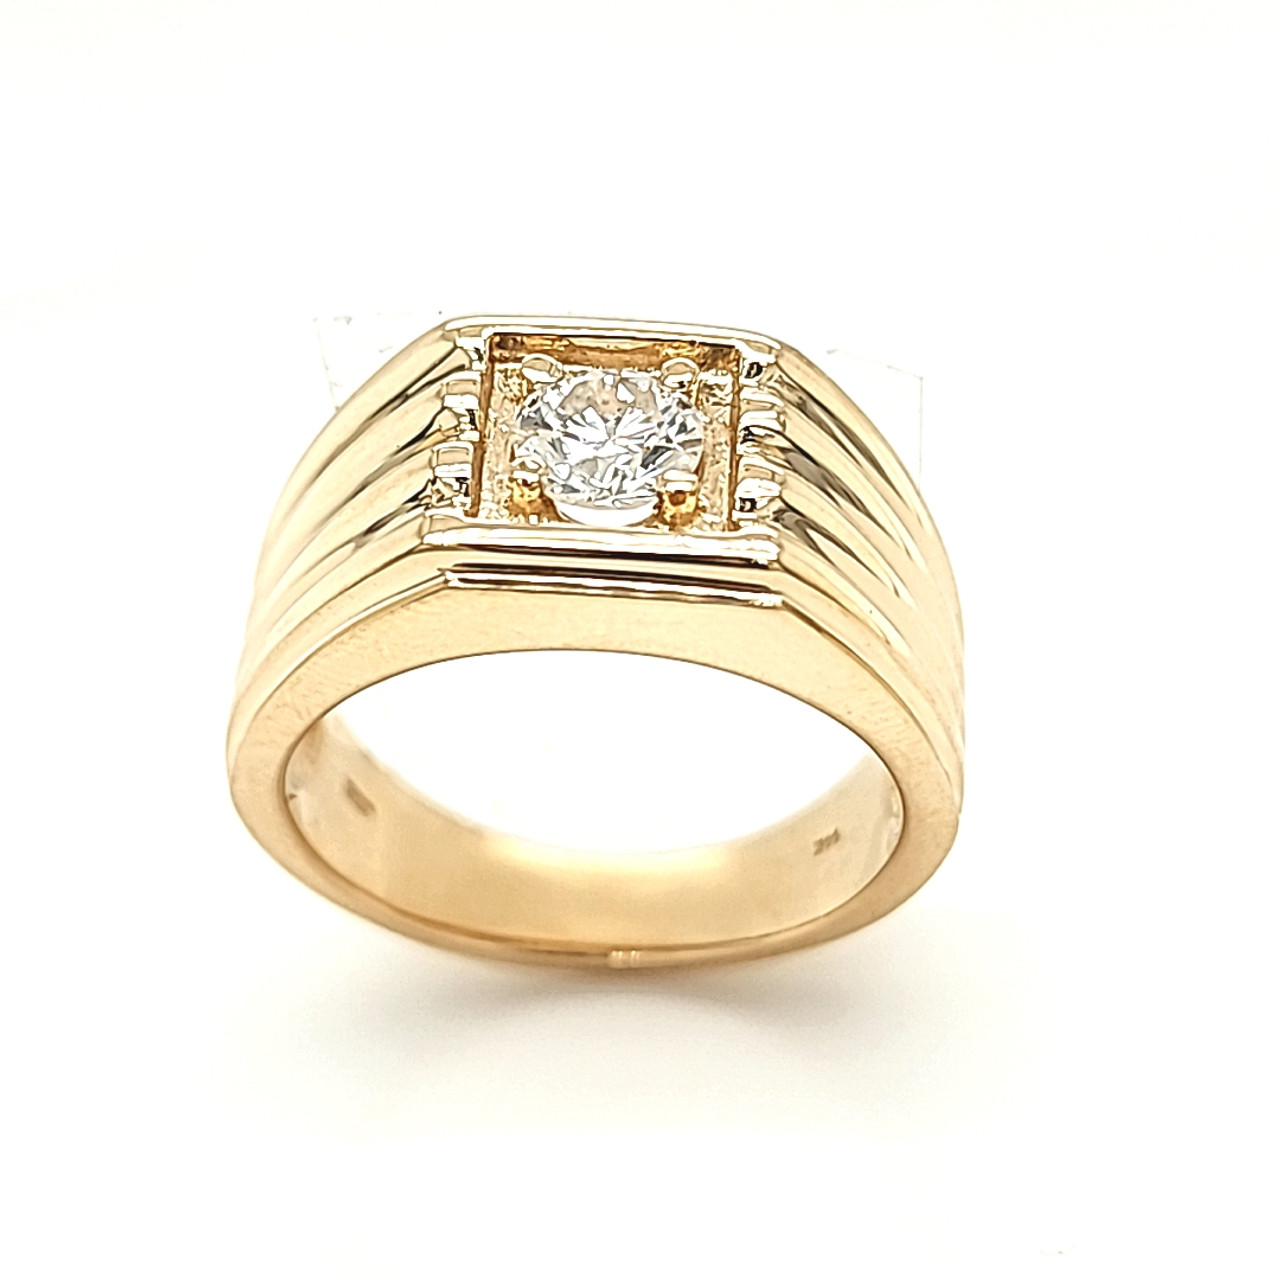 Buy Issac Diamond Ring For Men Online | CaratLane